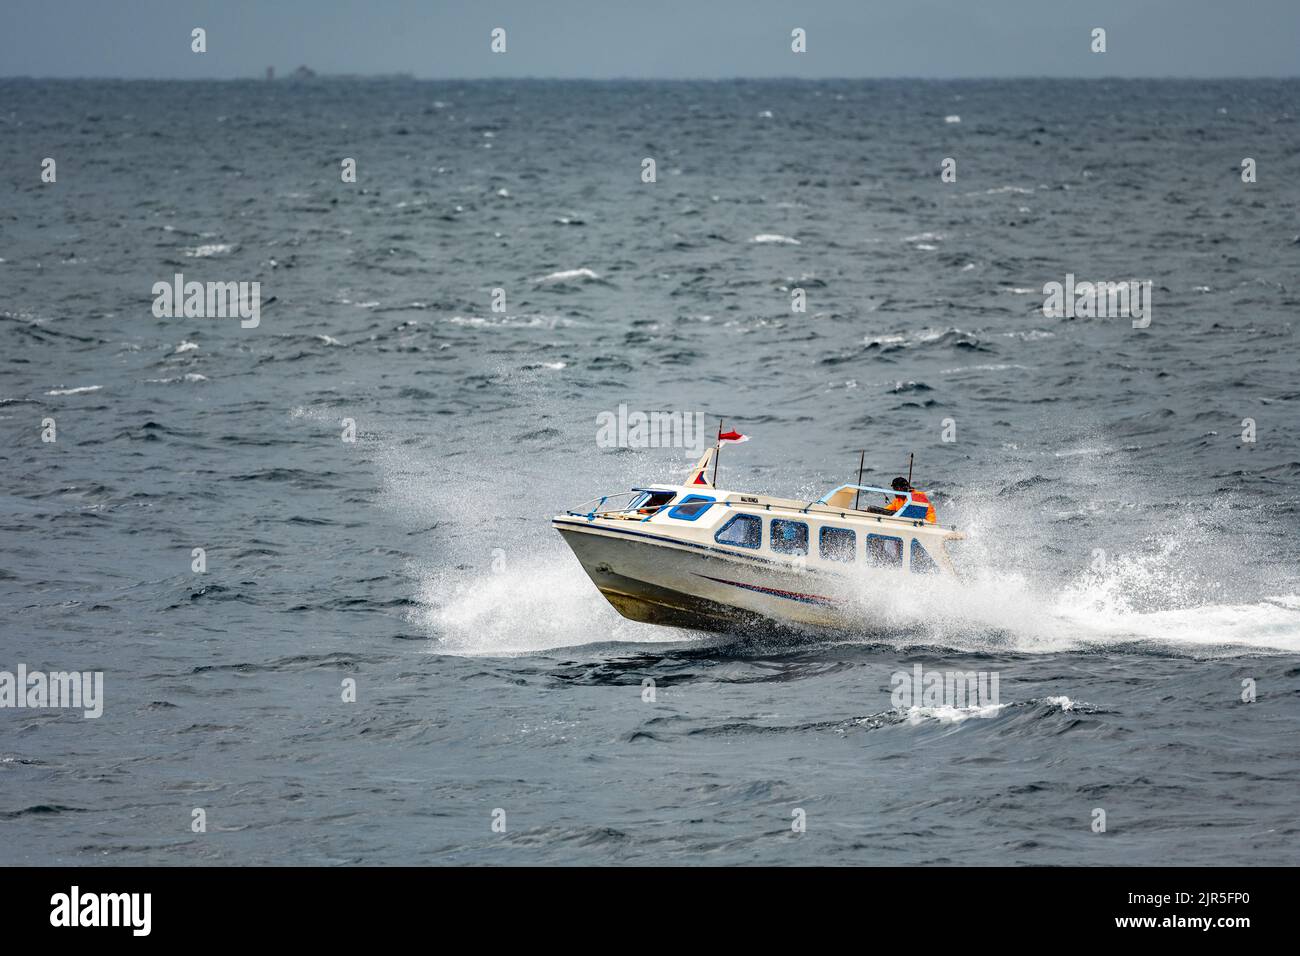 Bateau à grande vitesse sur une mer agitée. Île de Ternate, Nord de Maluku, Indonésie. Banque D'Images